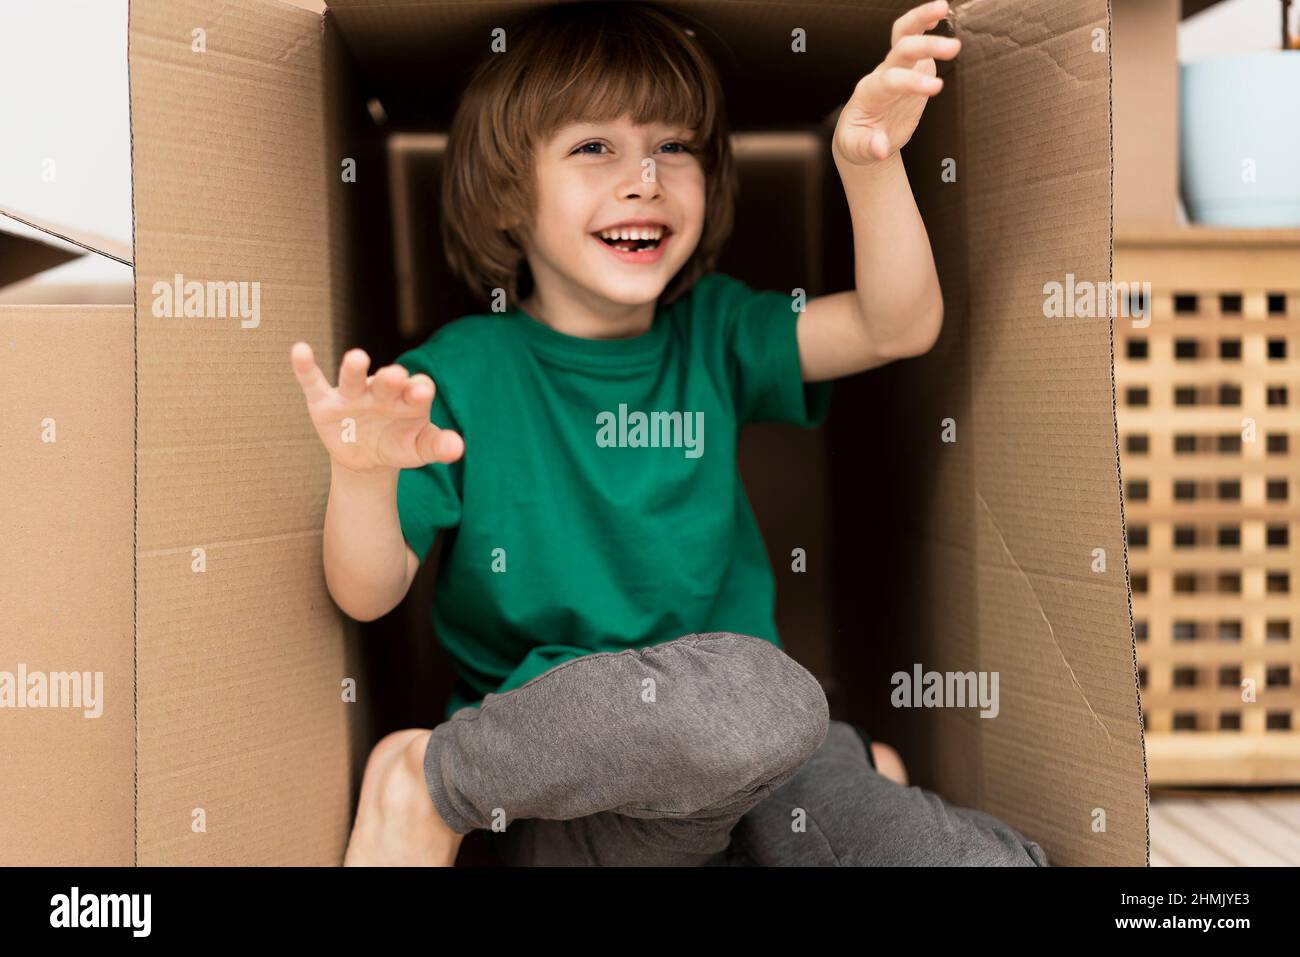 Ragazzo che si nasconde all'interno di un'enorme scatola di cartone. Sta giocando e guardando fuori da una scatola. Il capretto è felice di muoversi in una nuova sede. Foto Stock